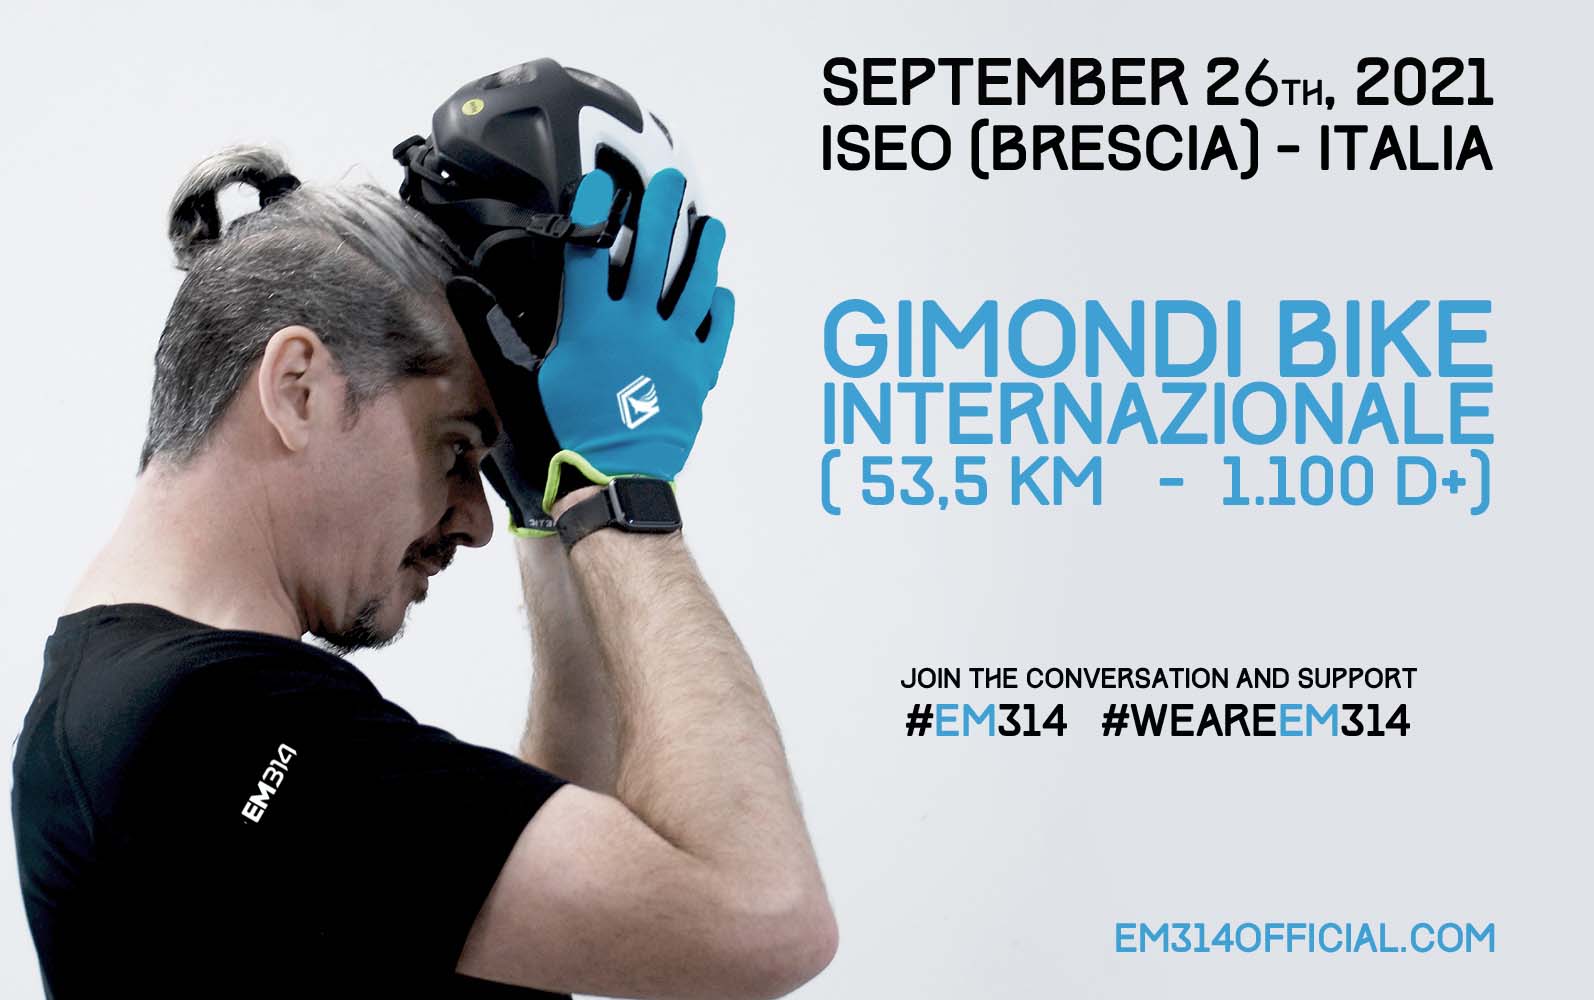 Foto 1 - Emmanuele Macaluso “EM314” - l’atleta più green d’Italia - partecipa alla Gimondi Bike Internazionale